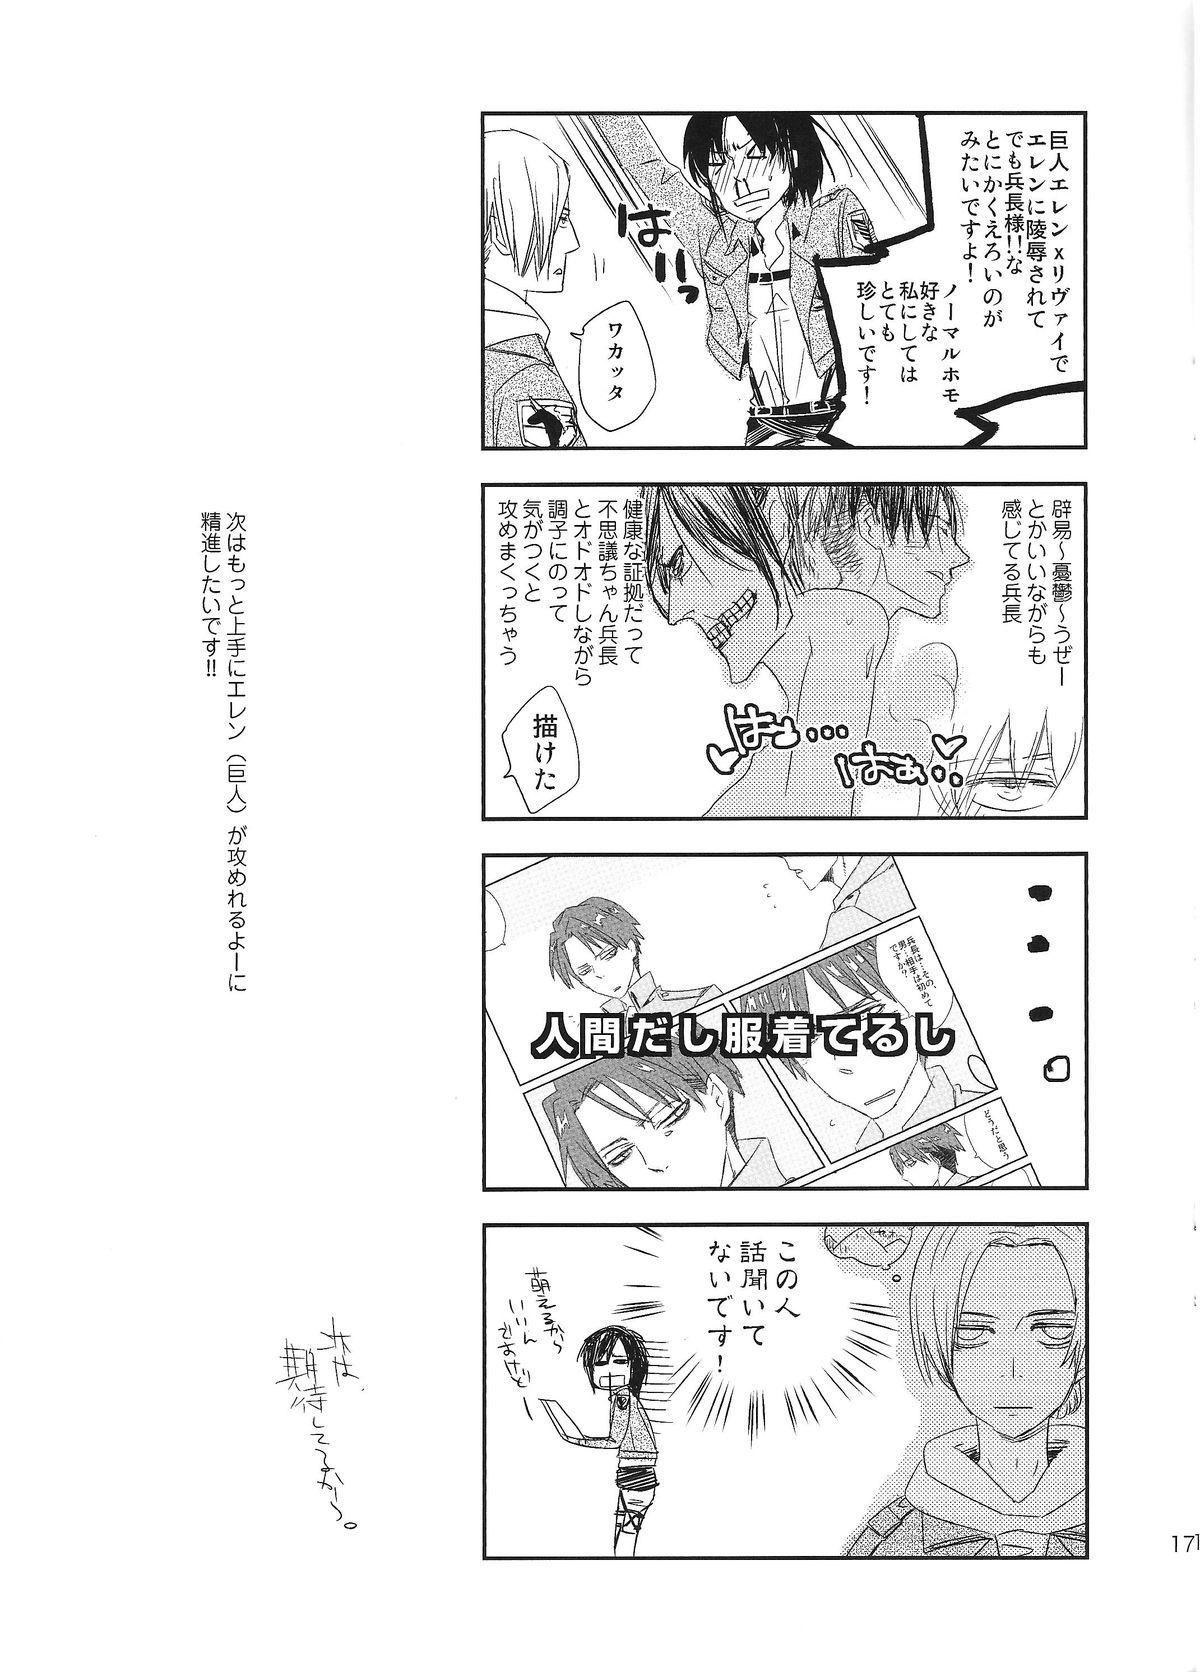 Puto Kyojin to! - Shingeki no kyojin Metendo - Page 17